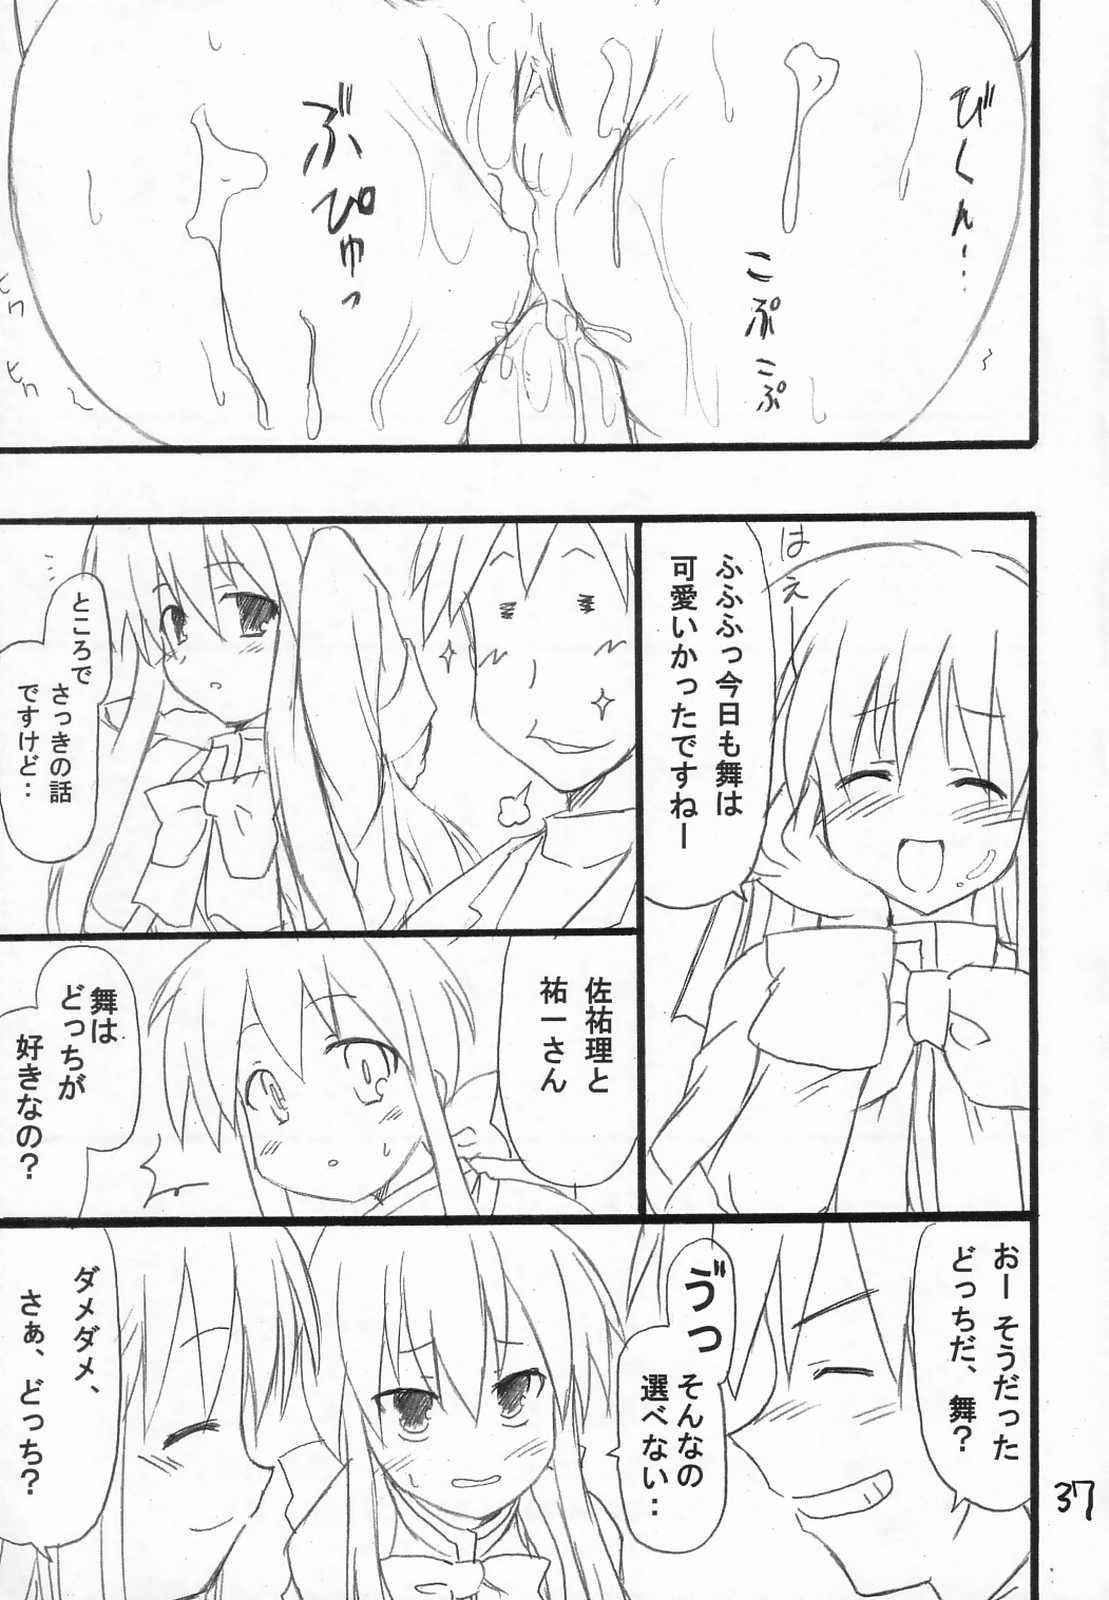 Dorm Usagi Ijime - Kanon Morena - Page 38